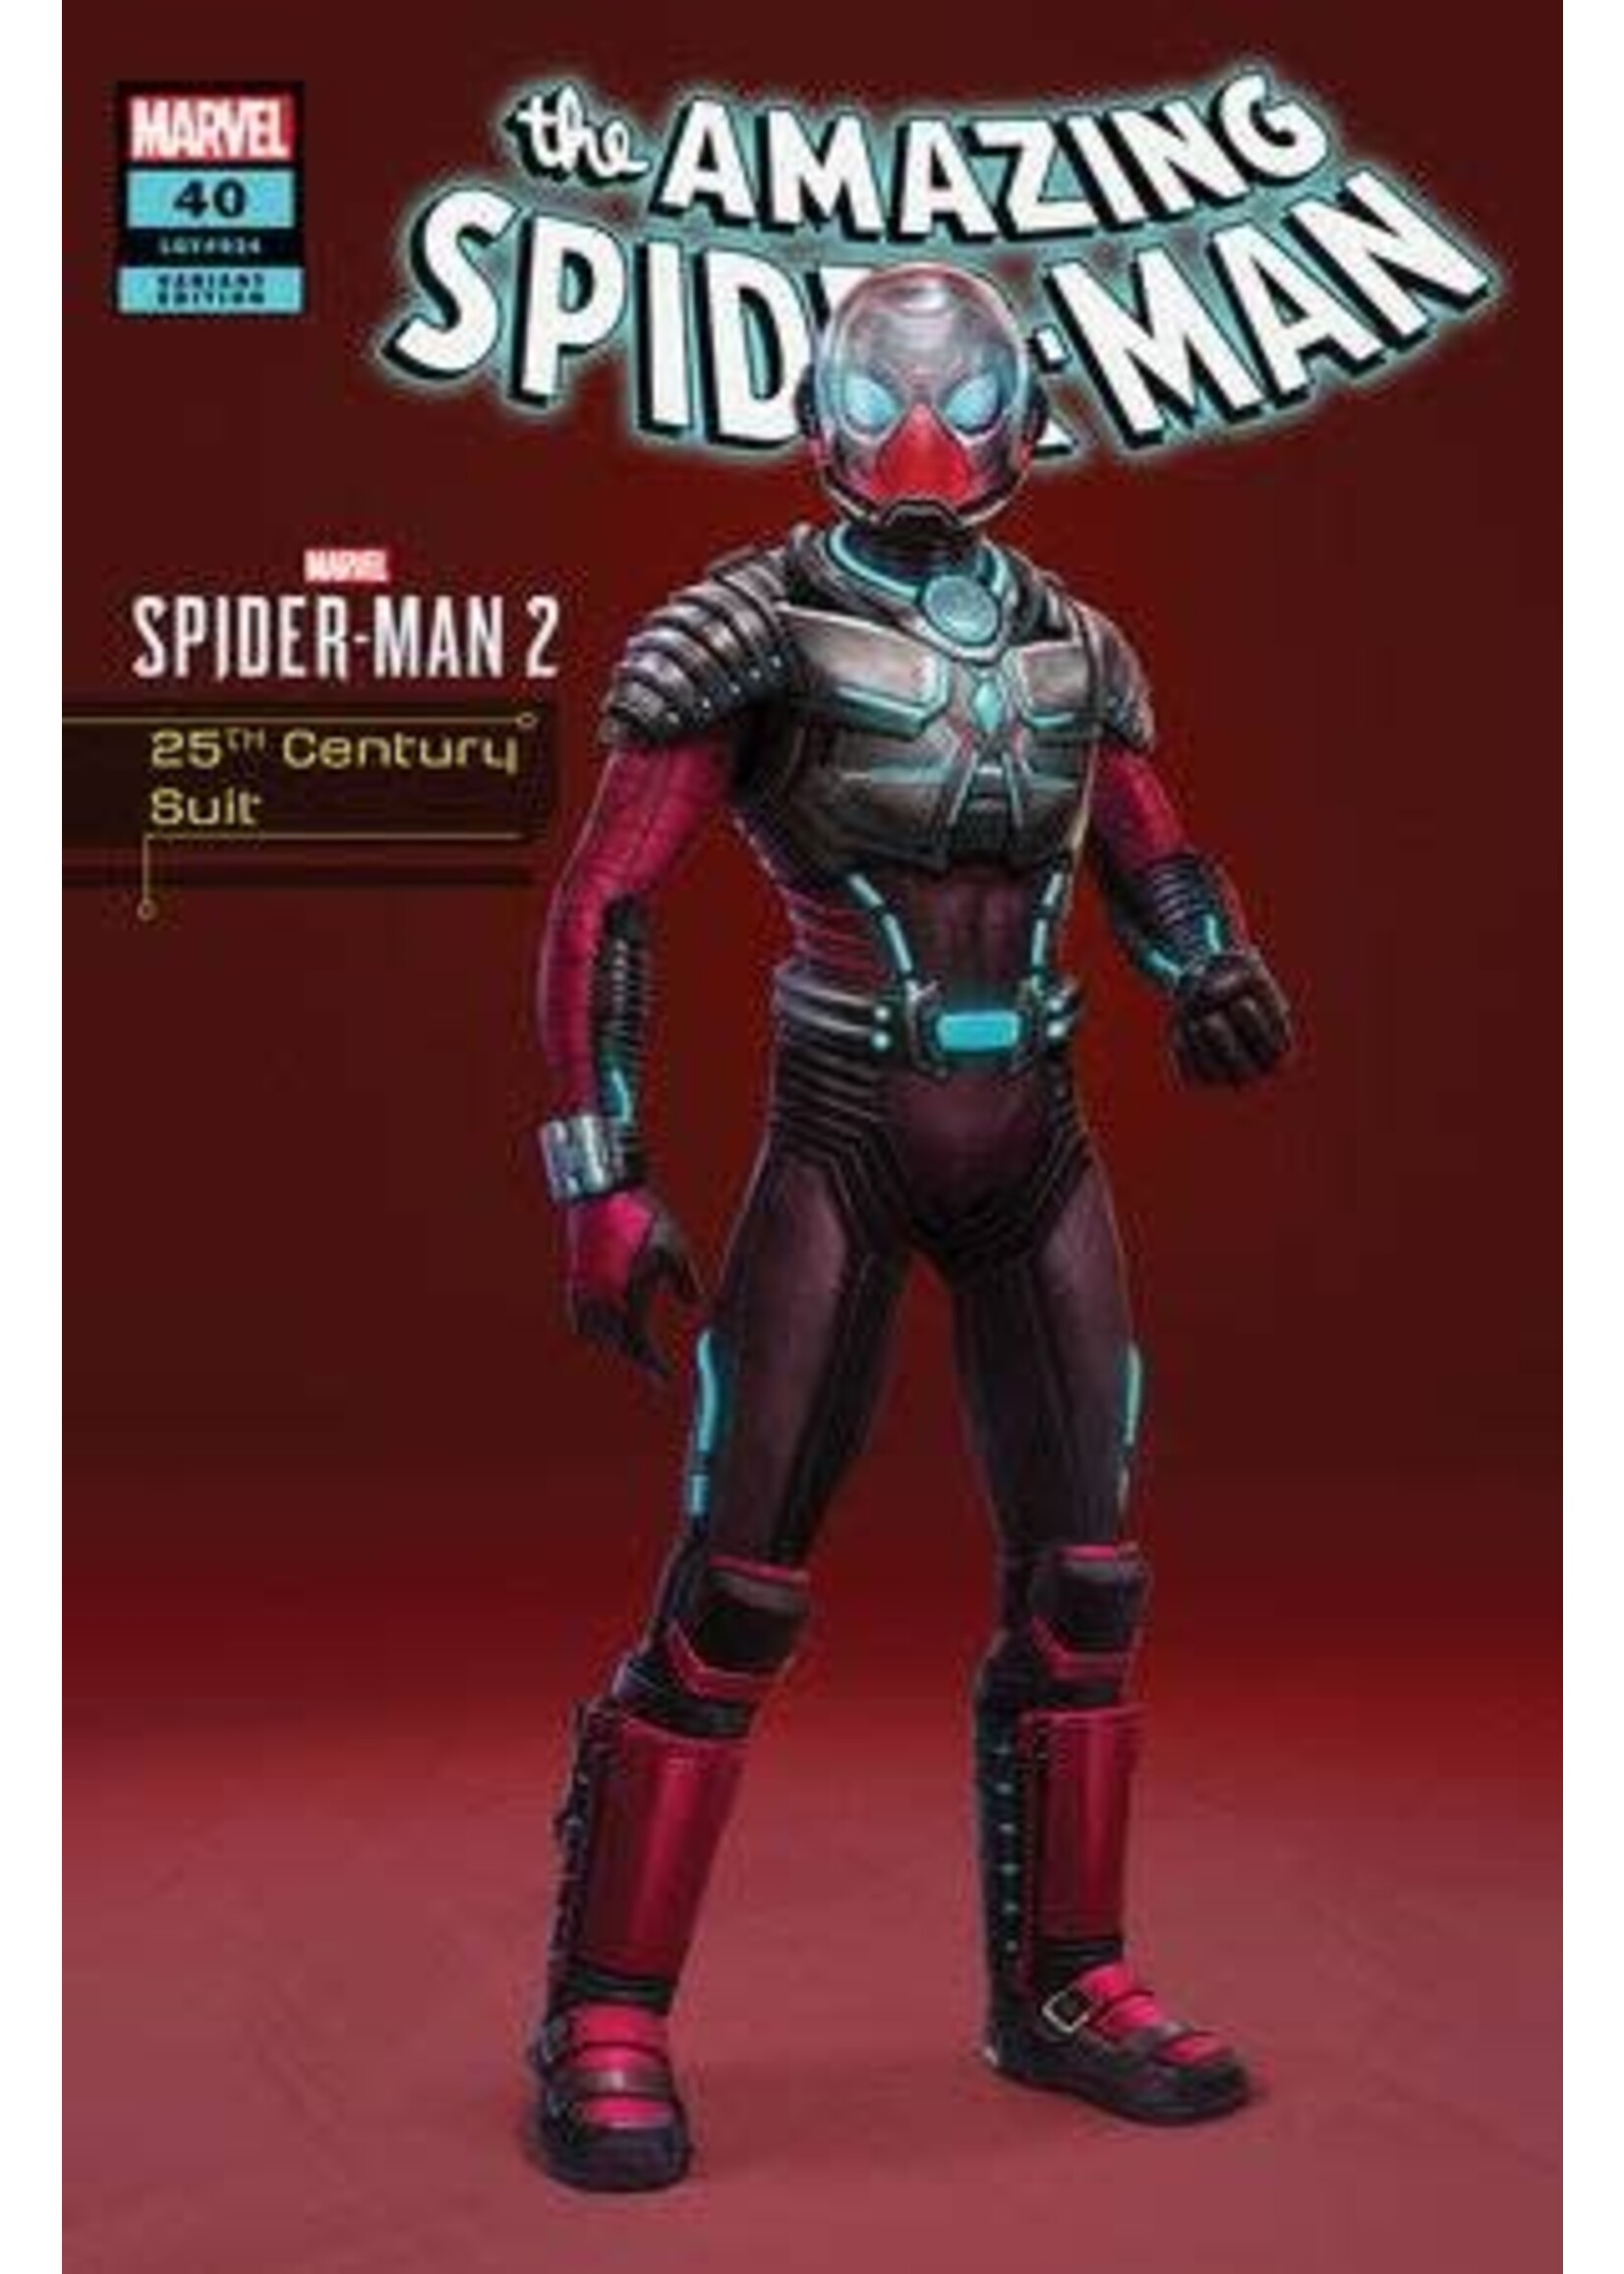 MARVEL COMICS AMAZING SPIDER-MAN (2022) #40 25TH CENTURY SUIT SPIDER-MAN 2 VAR